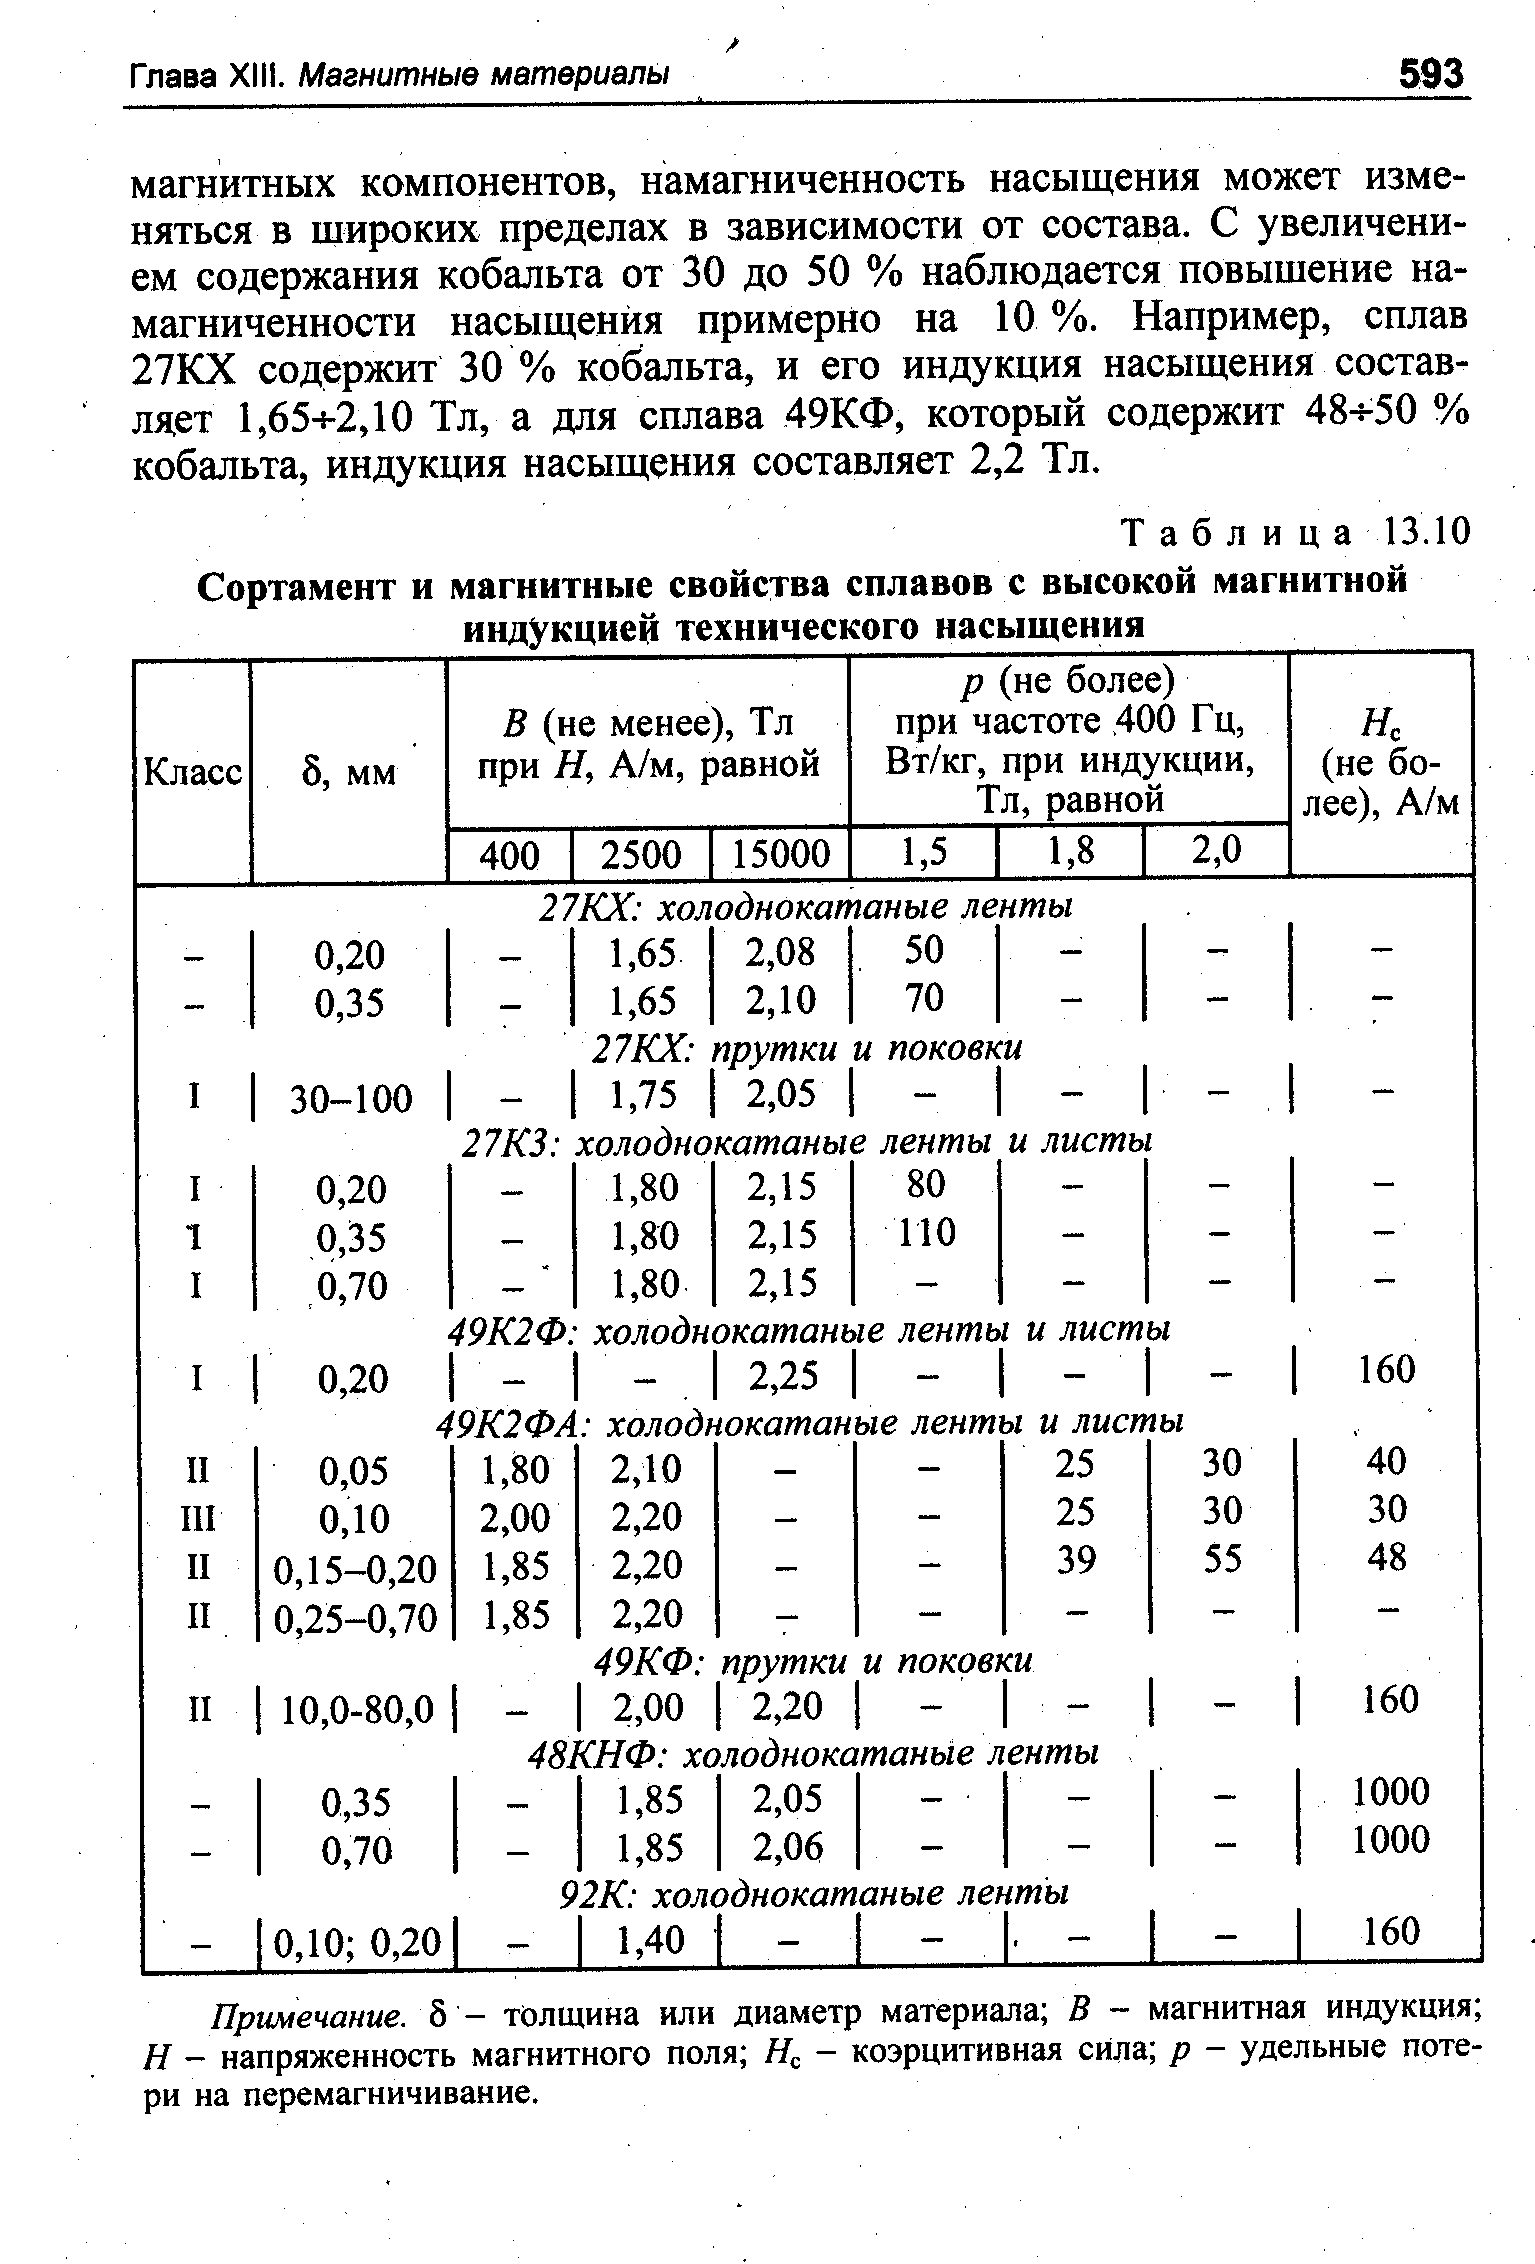 Таблица 13.10 Сортамент и <a href="/info/59784">магнитные свойства сплавов</a> с высокой <a href="/info/11296">магнитной индукцией</a> технического насыщения
